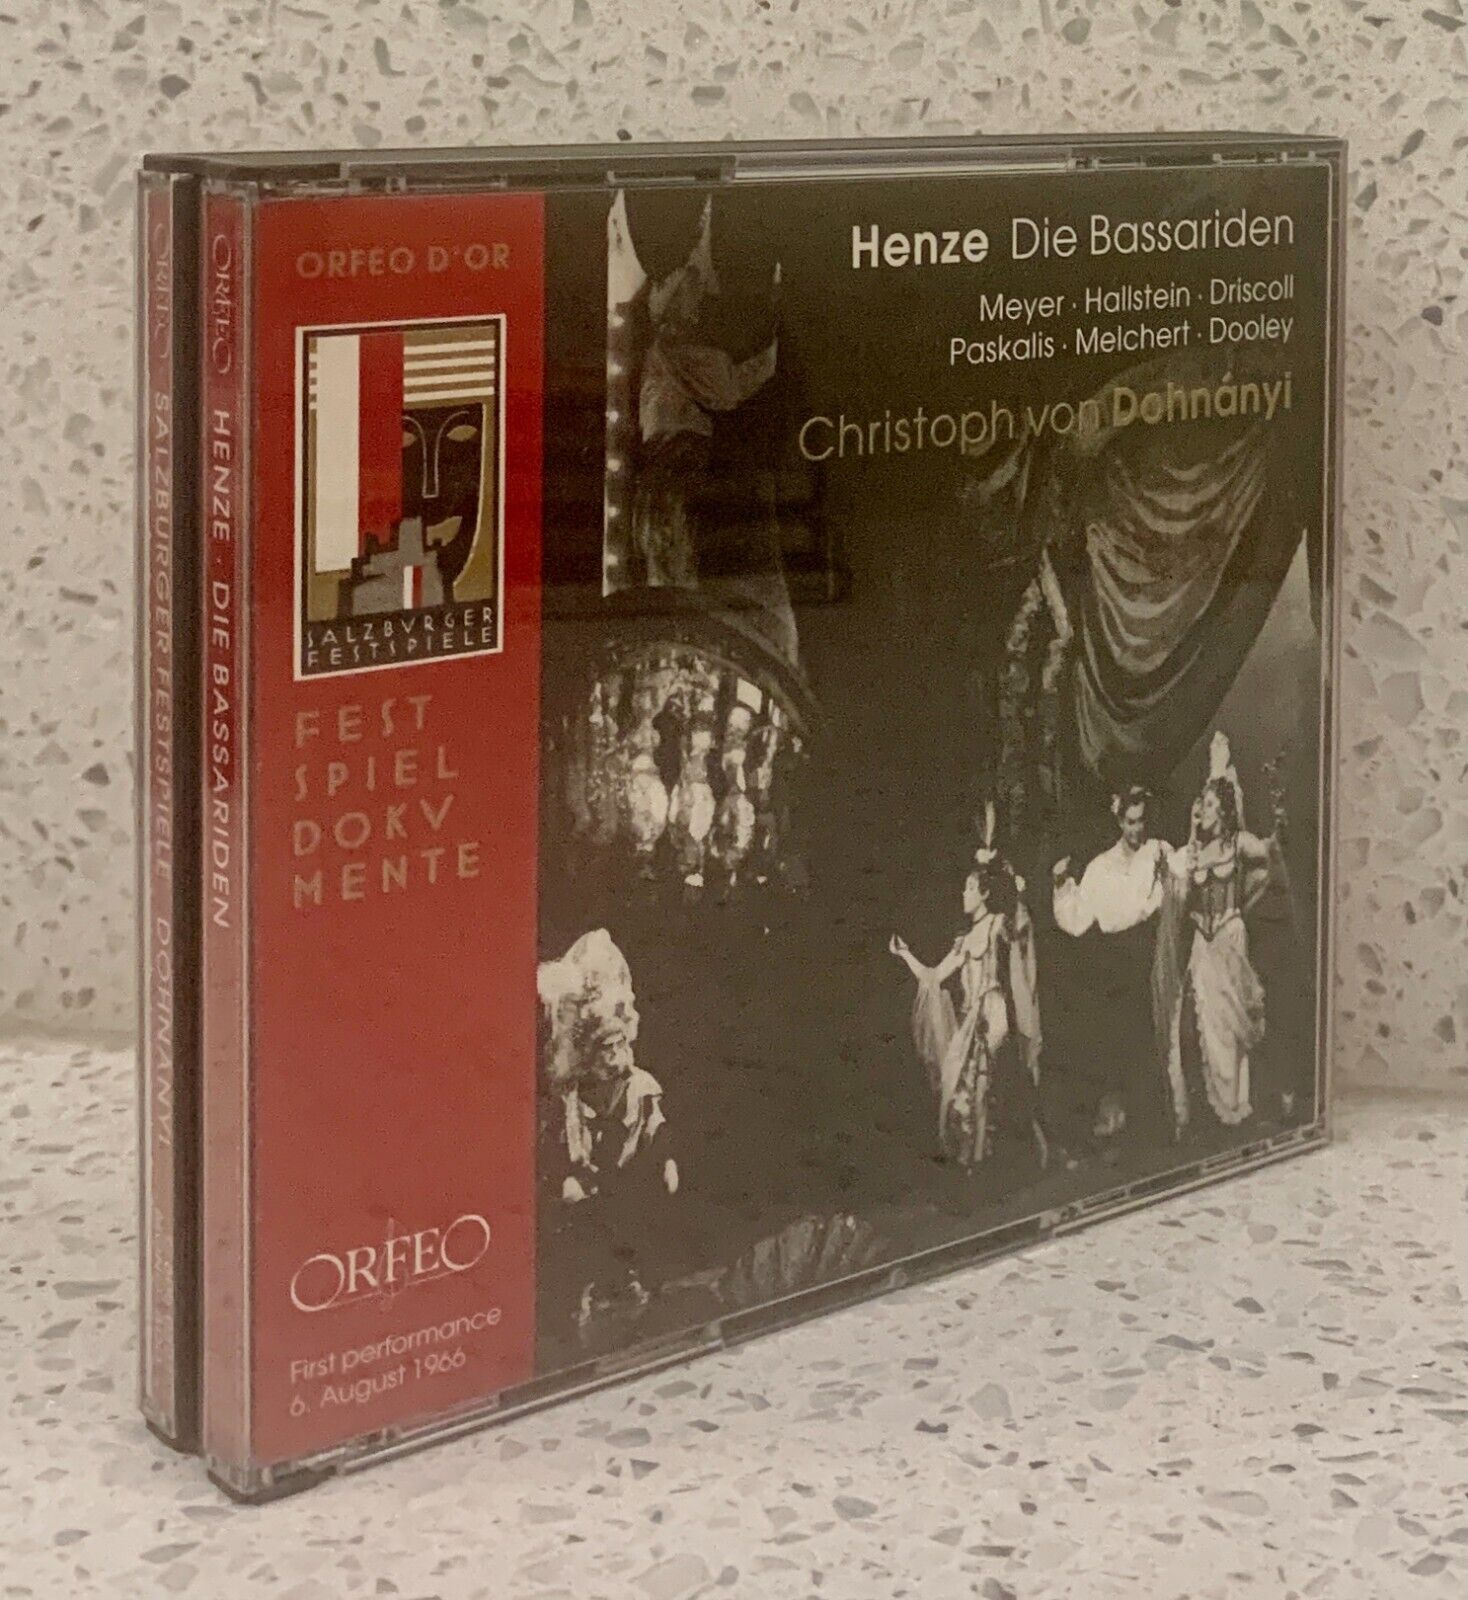 HENZE Die Bassariden [1966] 2 discs Orfeo DOHNANYI Premiere Performance Salzburg